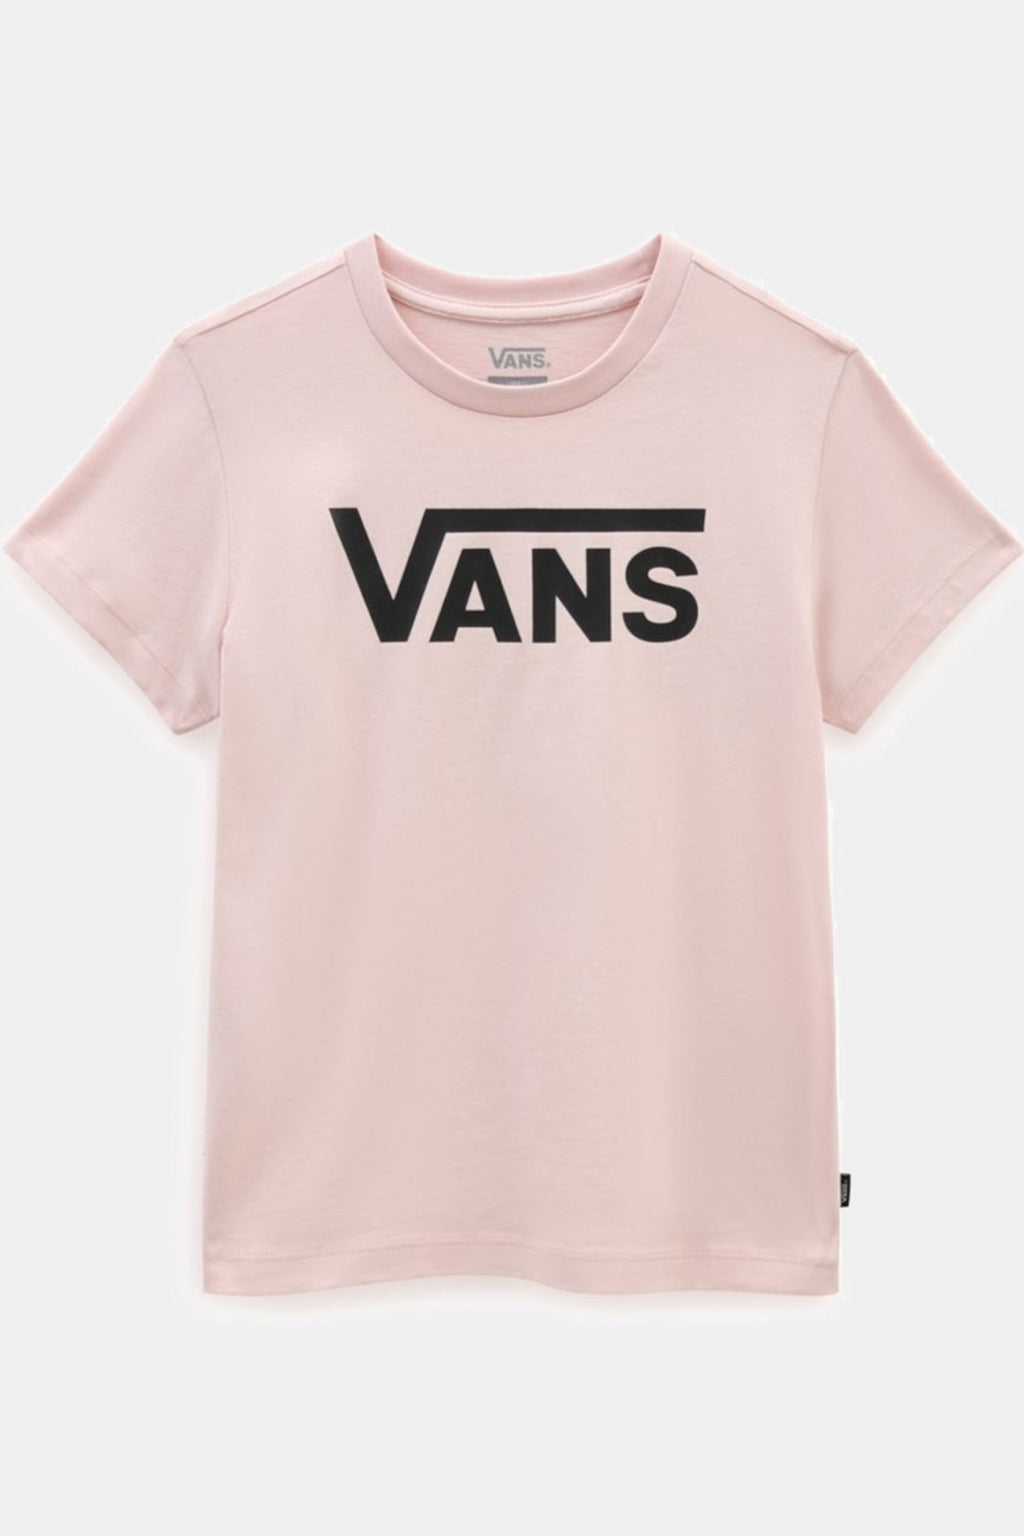 Vans - Vans Flying V T-shirt - Peach Whip